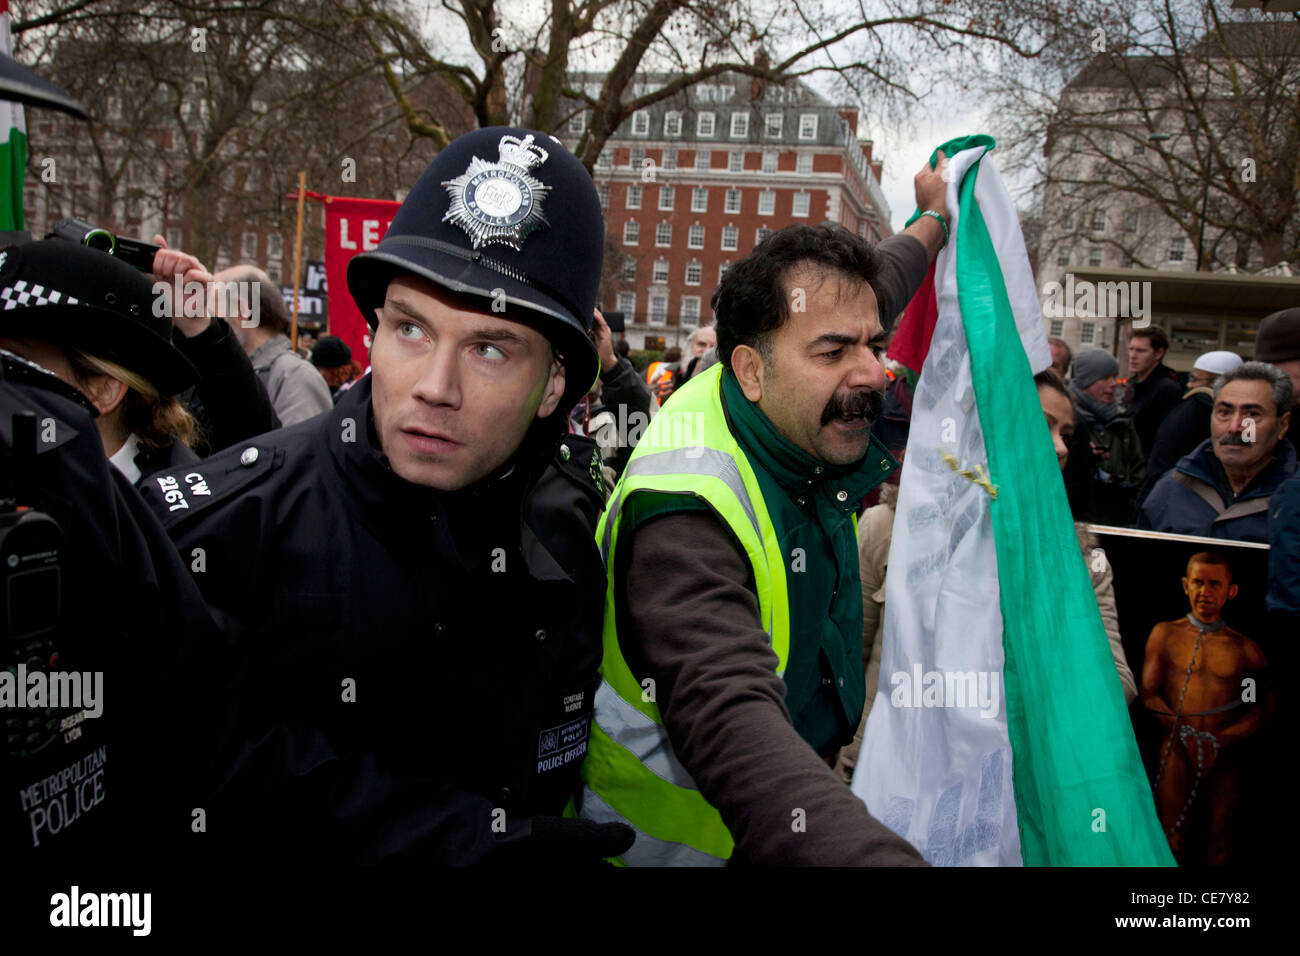 Stop The War Demonstration an der US-Botschaft in London. Freien Iran und anderen Demonstranten Kundgebung gegen Angriffe auf den Iran und Syrien. Stockfoto